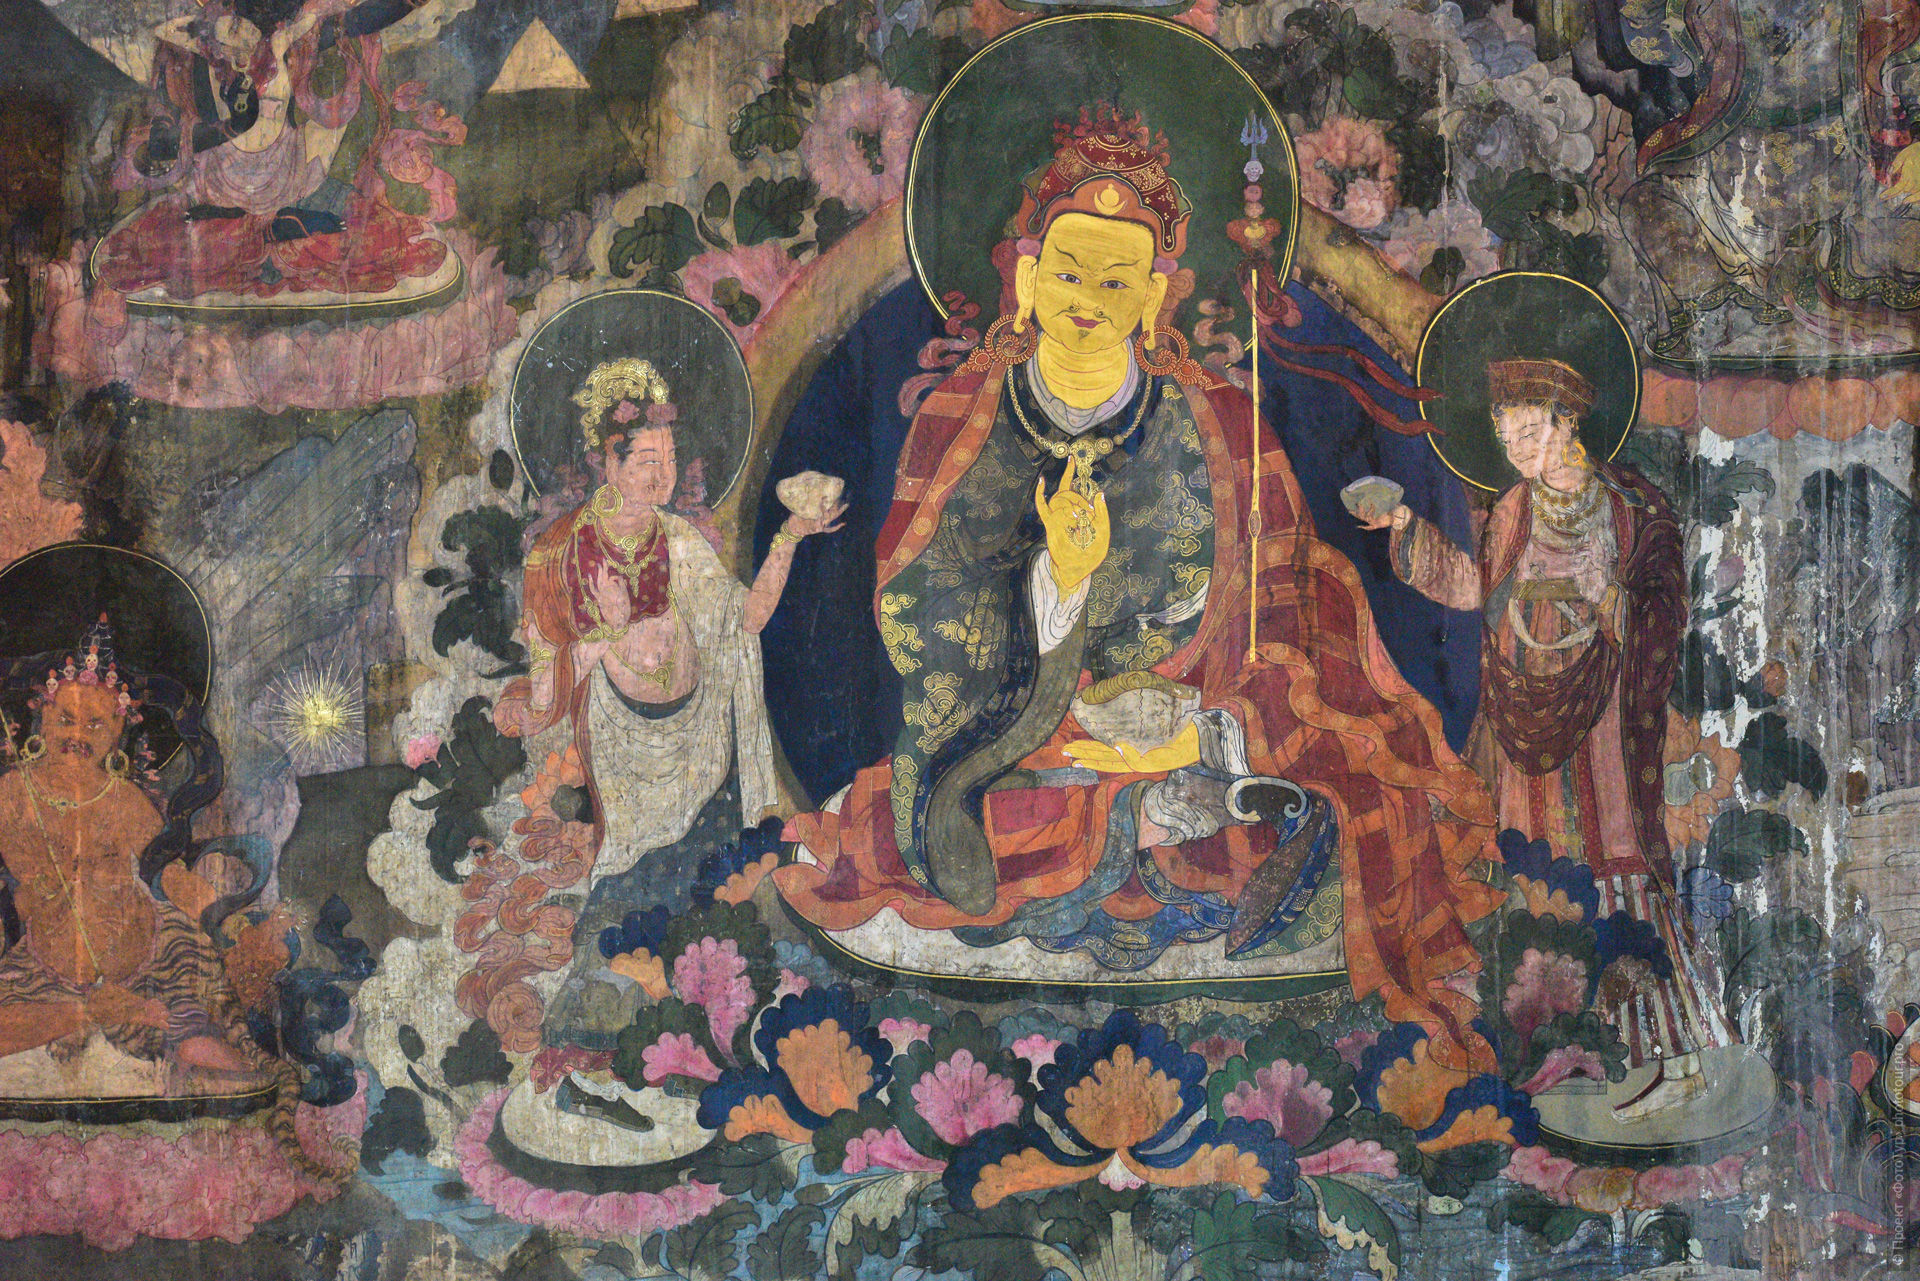 Гуру ПадмаСамбхава, монастырь Чамрей Гонпа, Ладакх, Гималаи, Северная Индия.